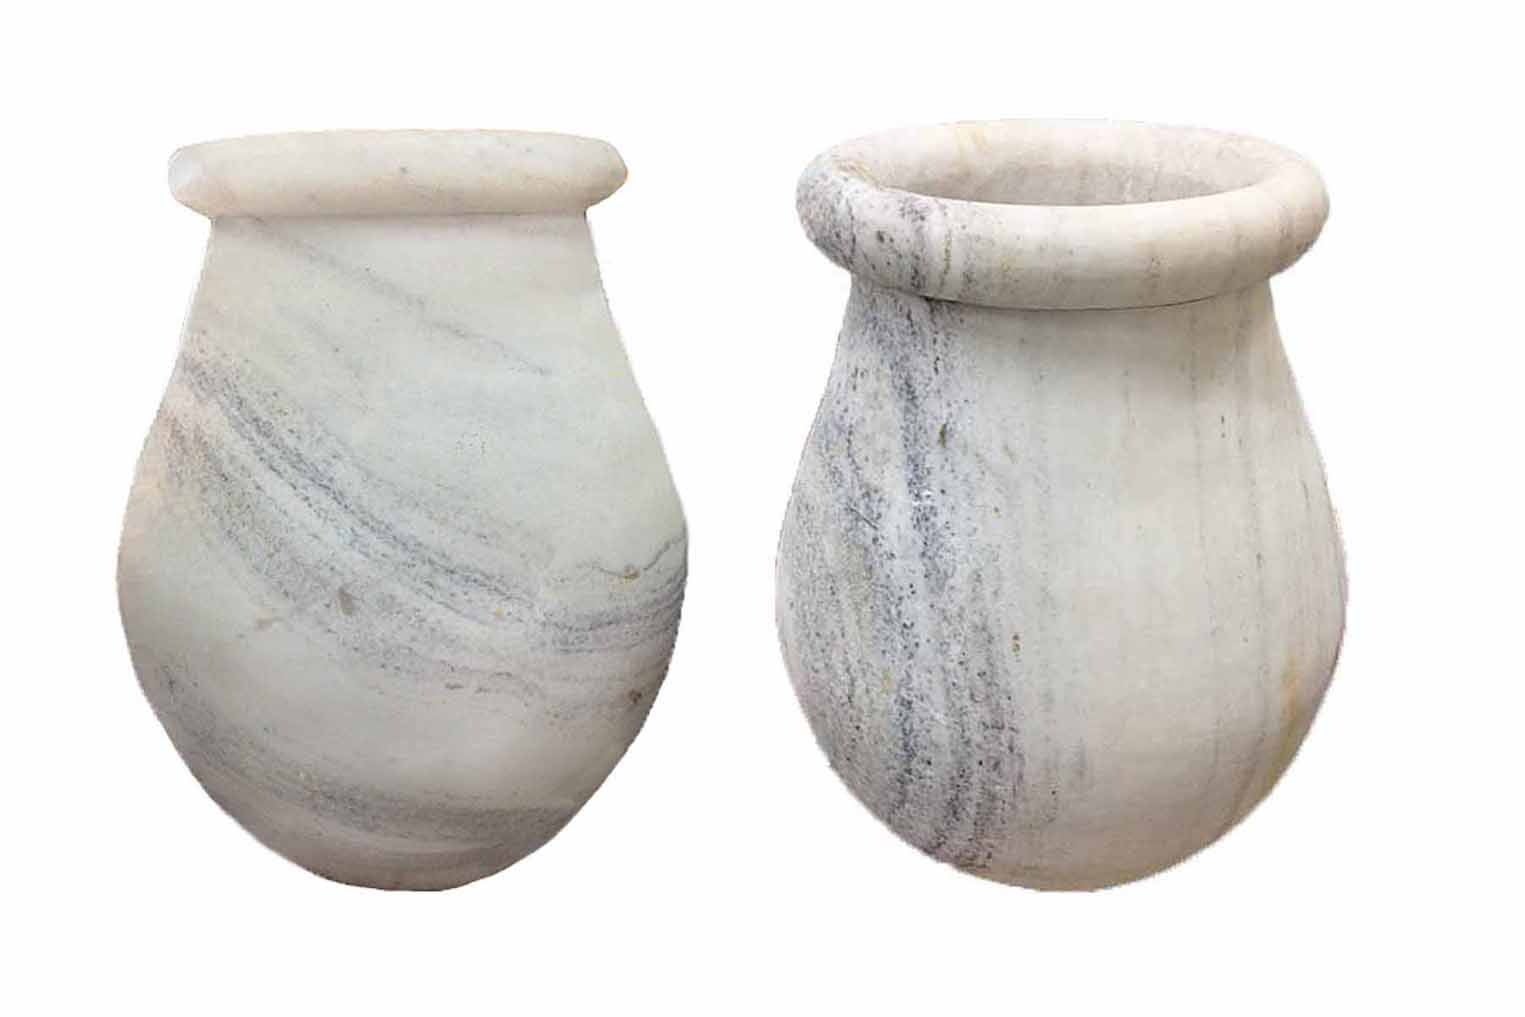 Pair of Mid-Century Carrara Marble Urns